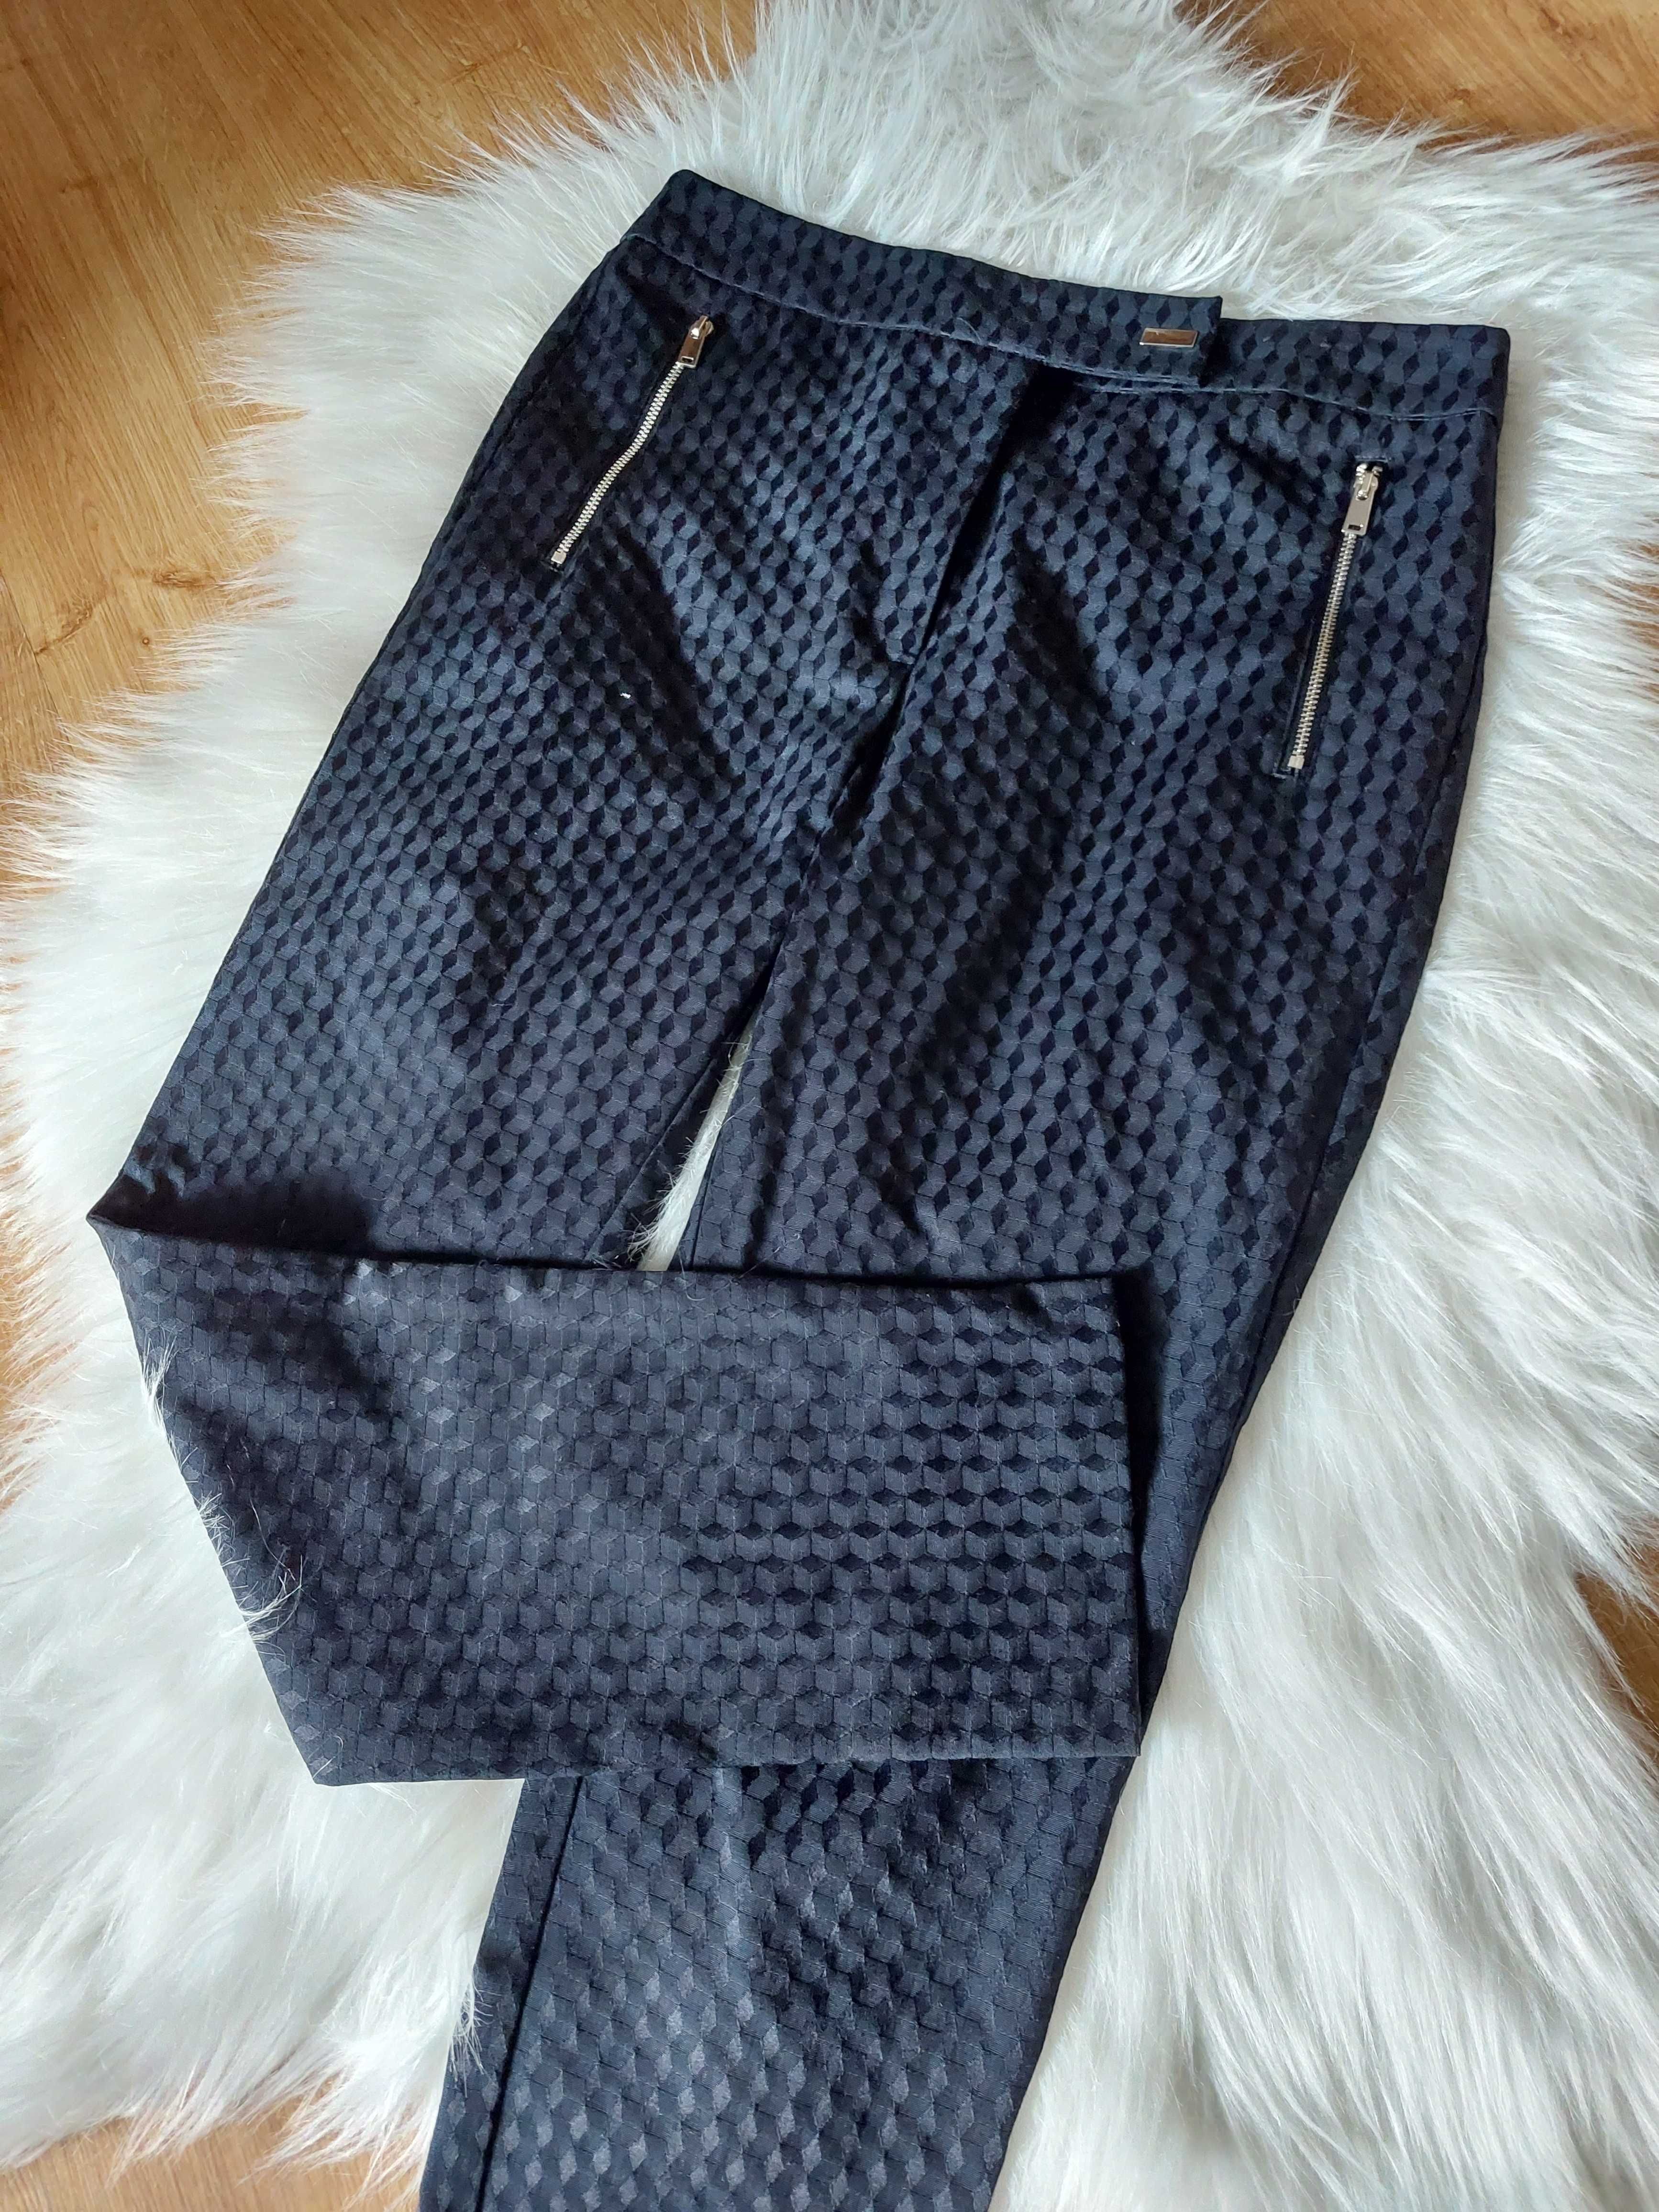 Ff spodnie granatowe wzór w romby m l xl eleganckie garniturowe wzór